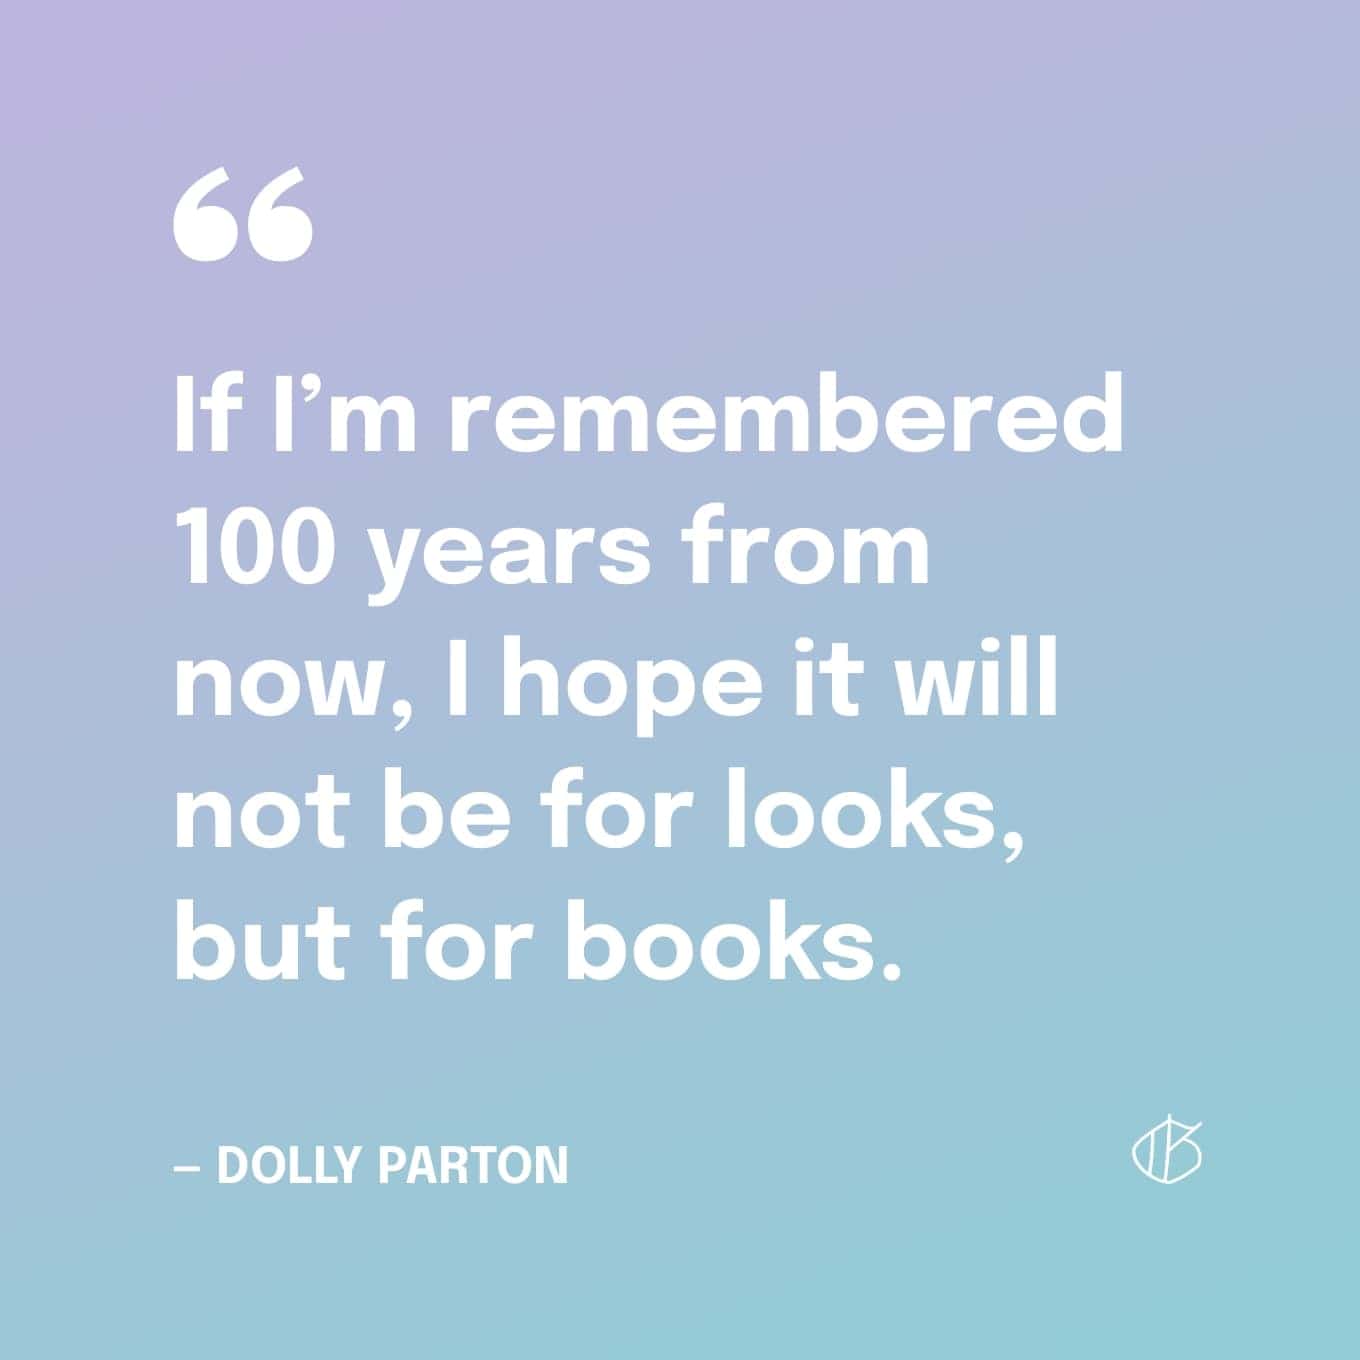 Dolly Parton Quote Wallpaper: Als ik over 100 jaar herinnerd word, hoop ik dat het niet voor het uiterlijk is, maar voor boeken.